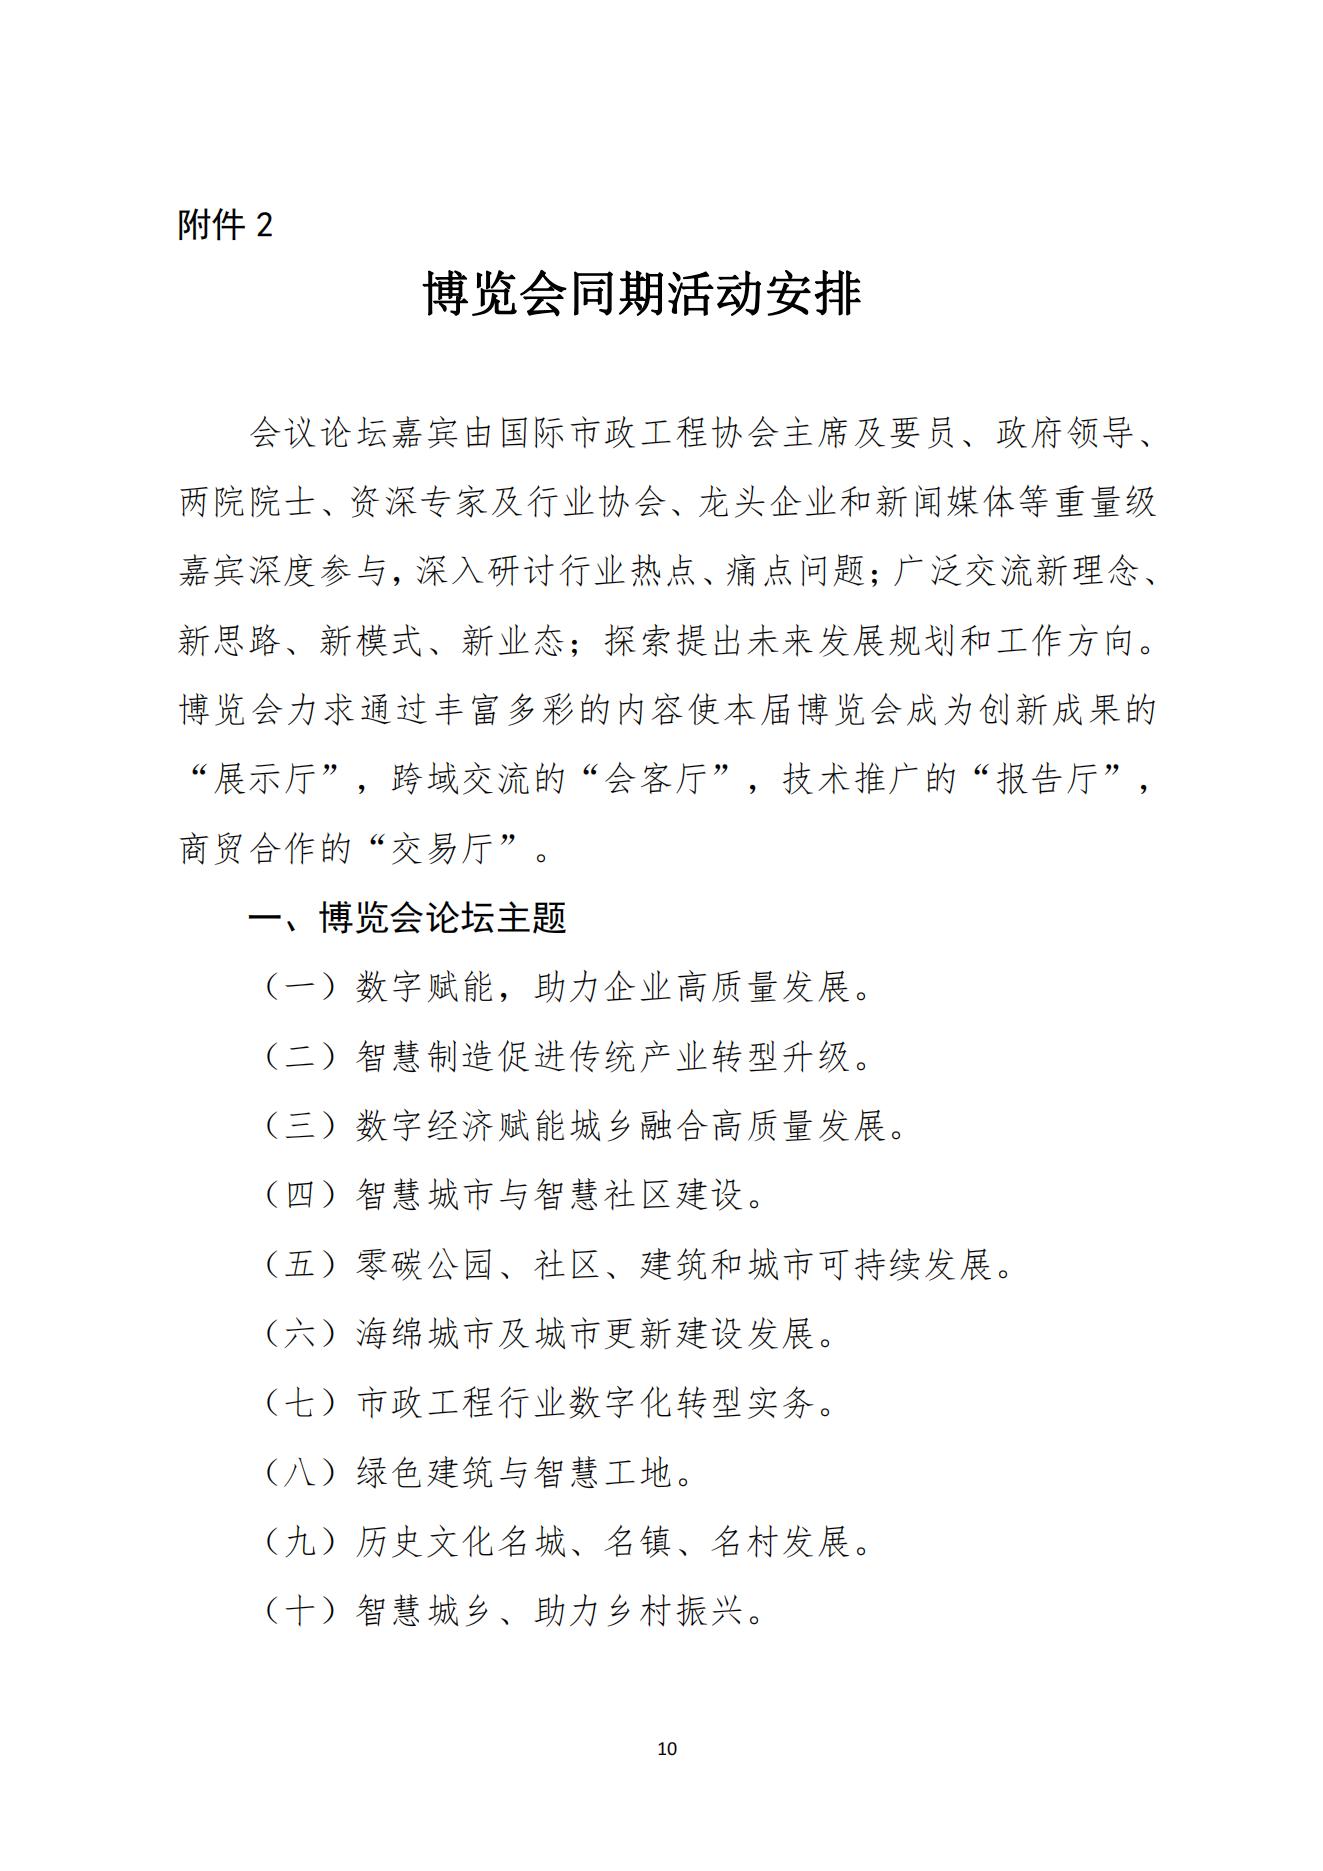 中国市政工程协会关于举办2023中国西部数字城乡发展产业博览会的通知11.9(1)_09.jpg